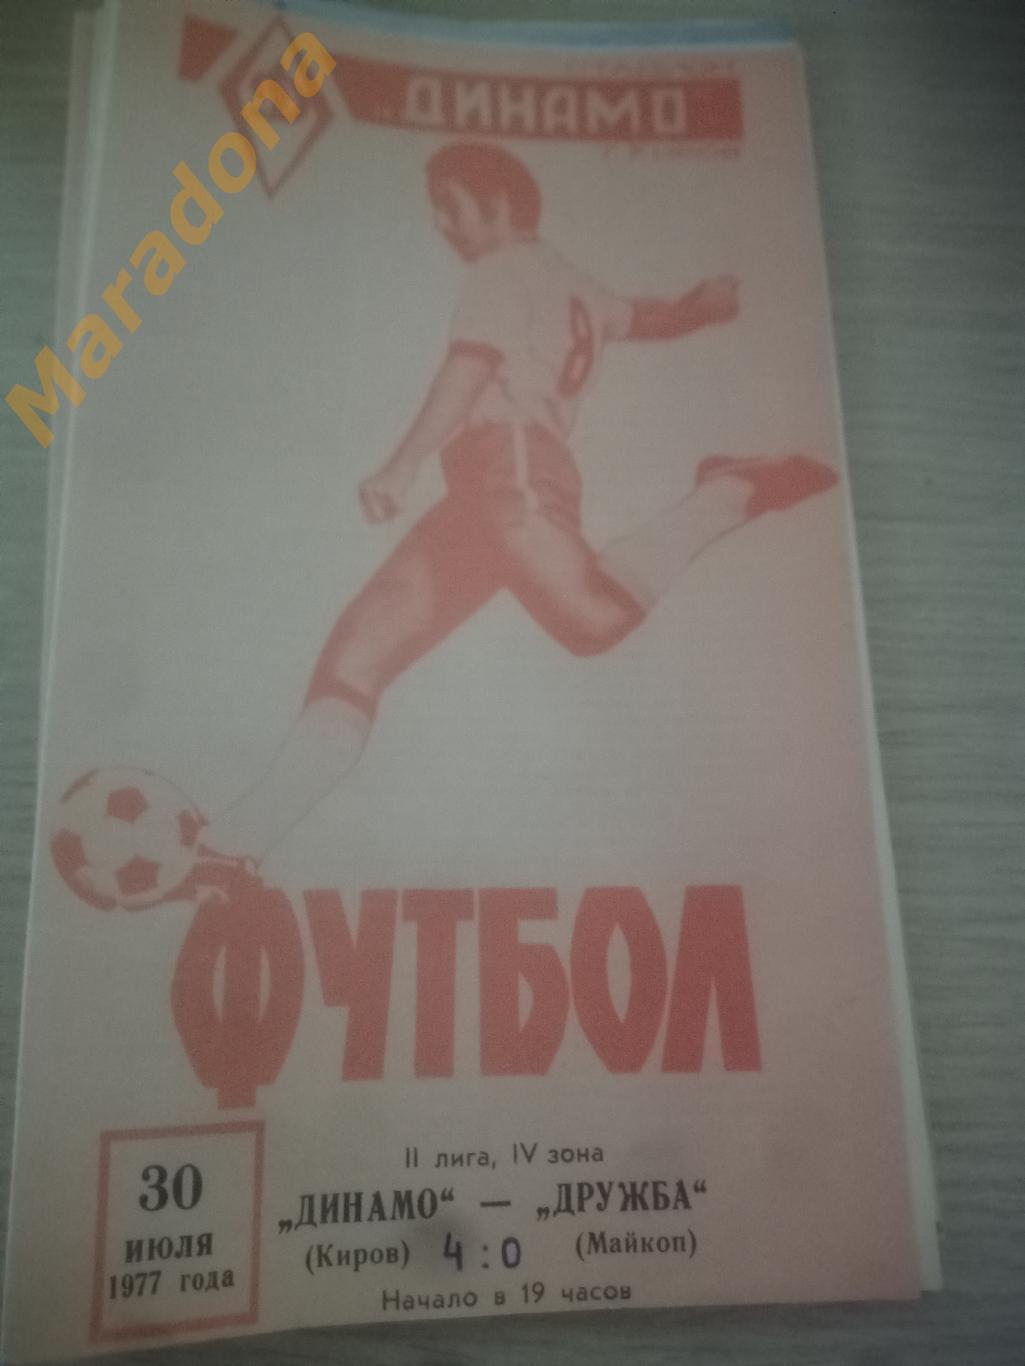 Динамо Киров - Дружба Майкоп 1977